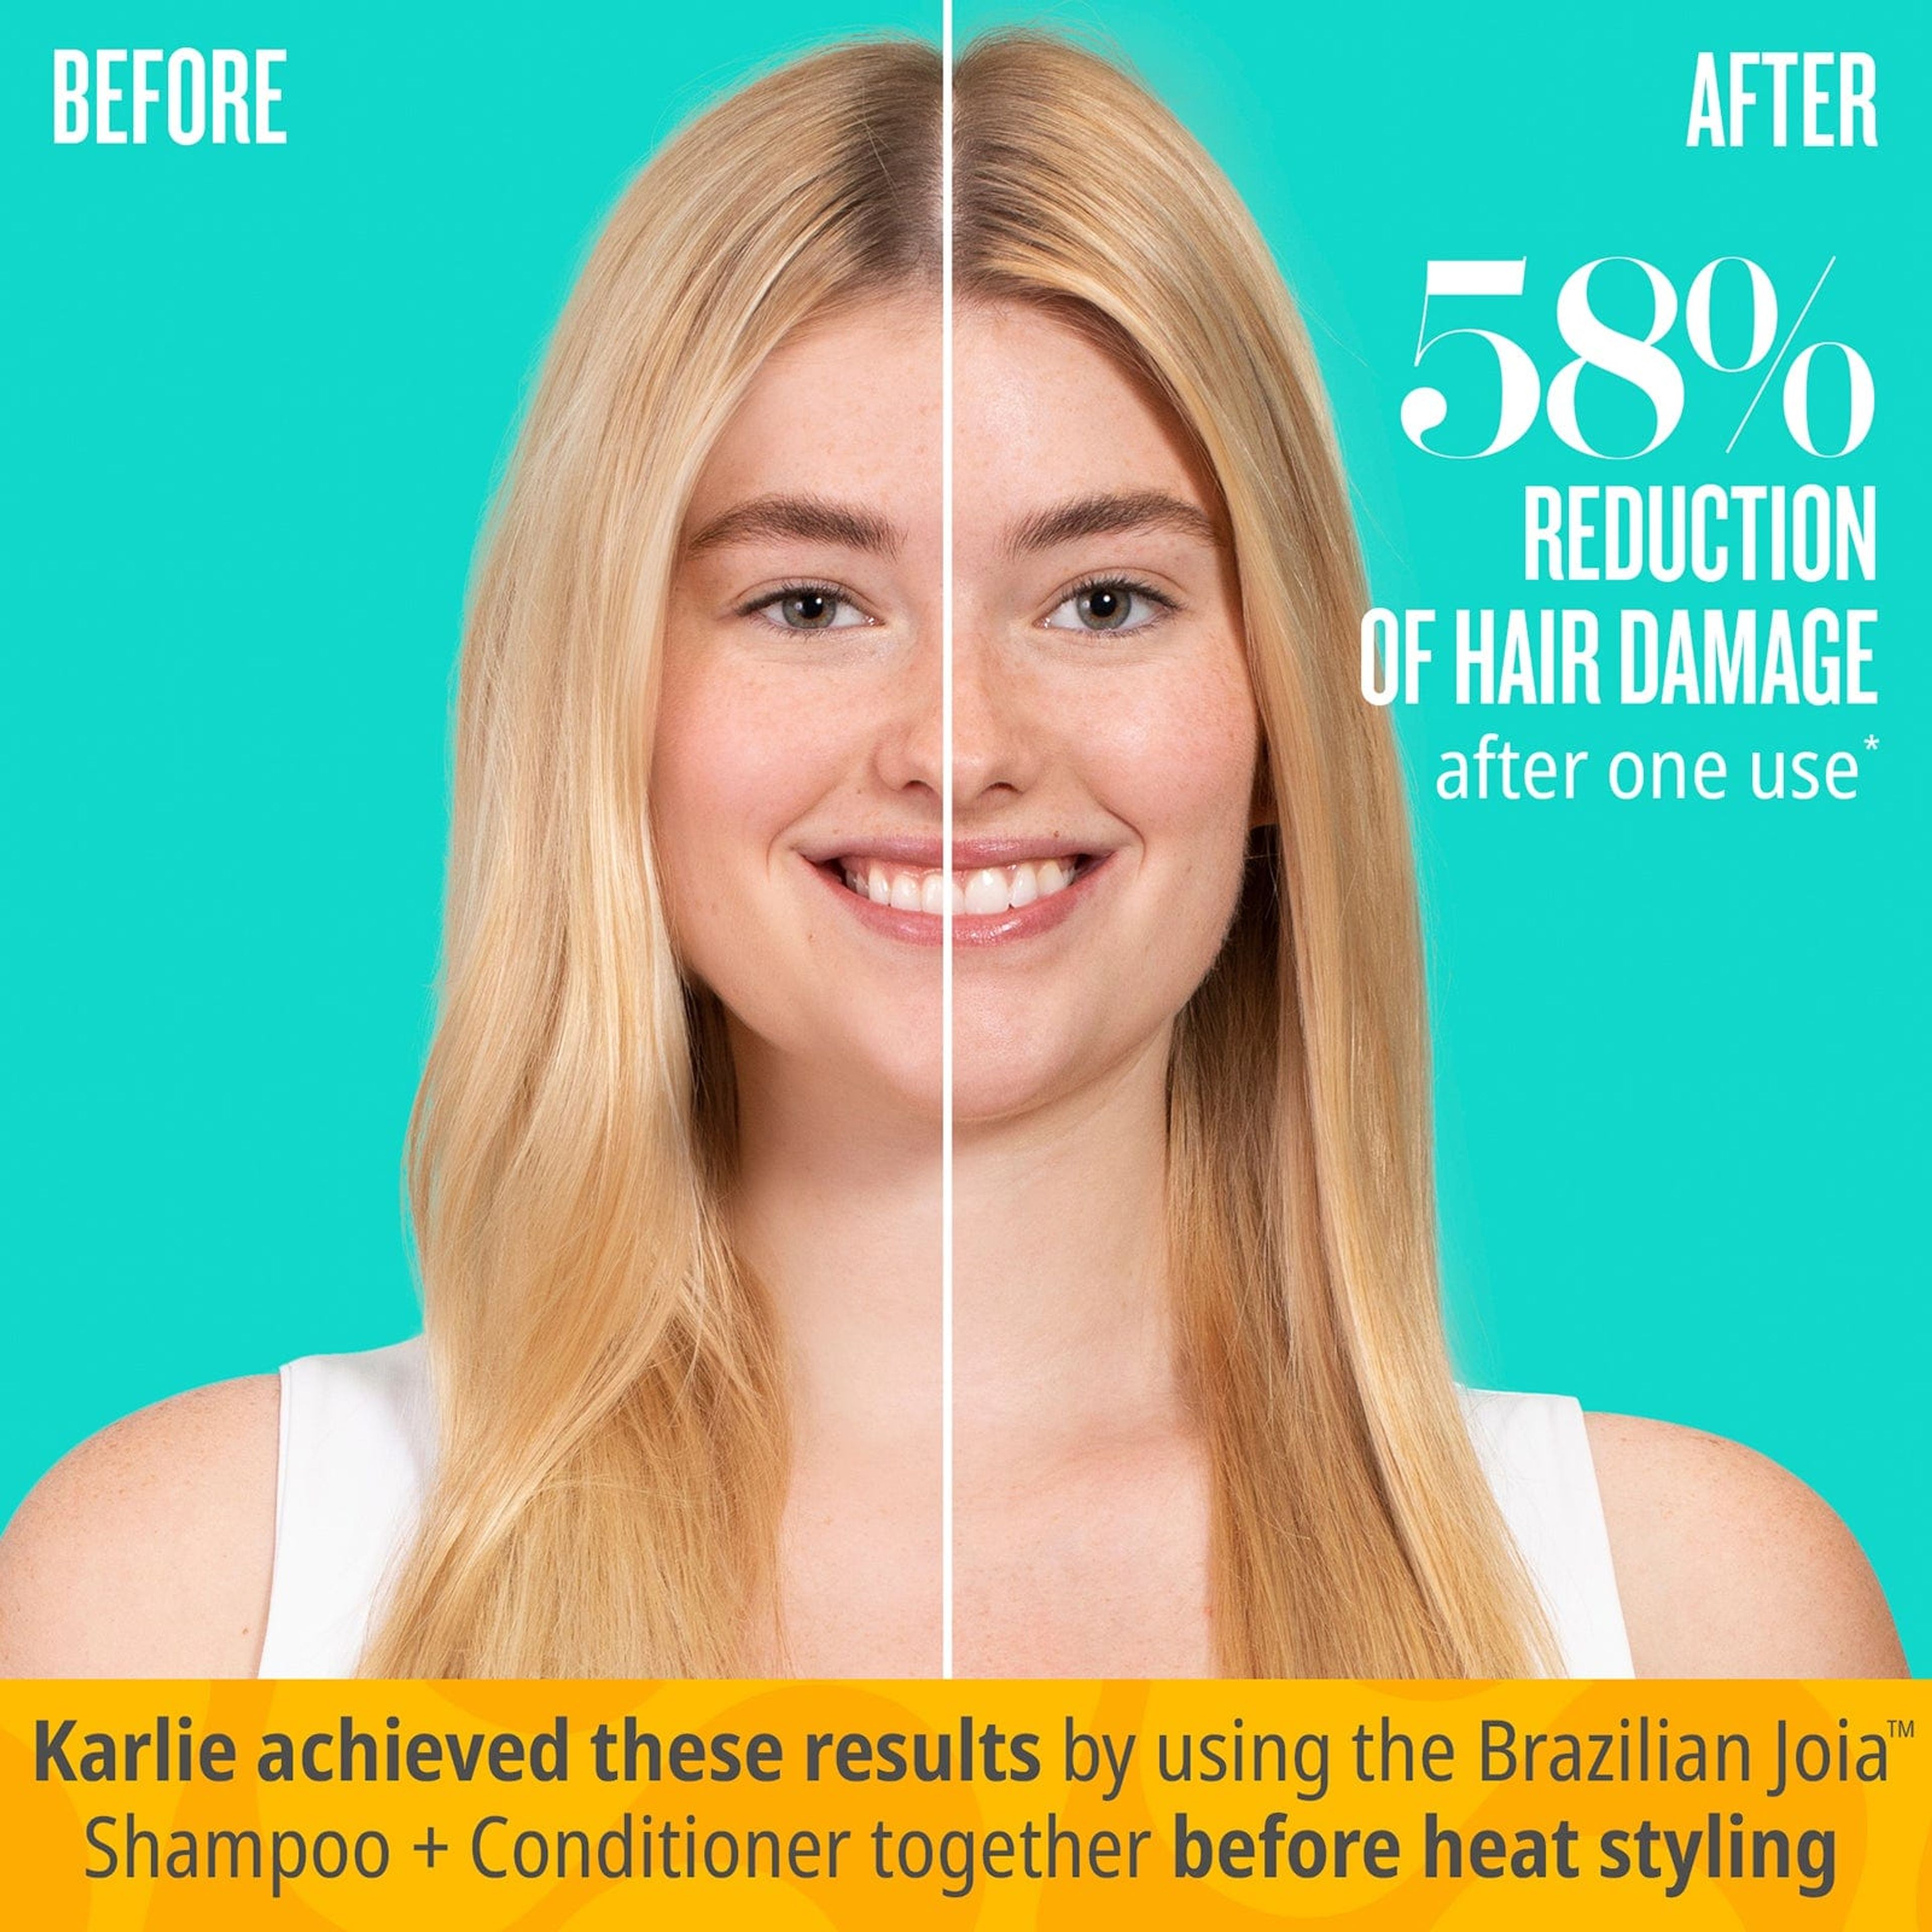 Brazilian Joia Strengthening + Smoothing Shampoo